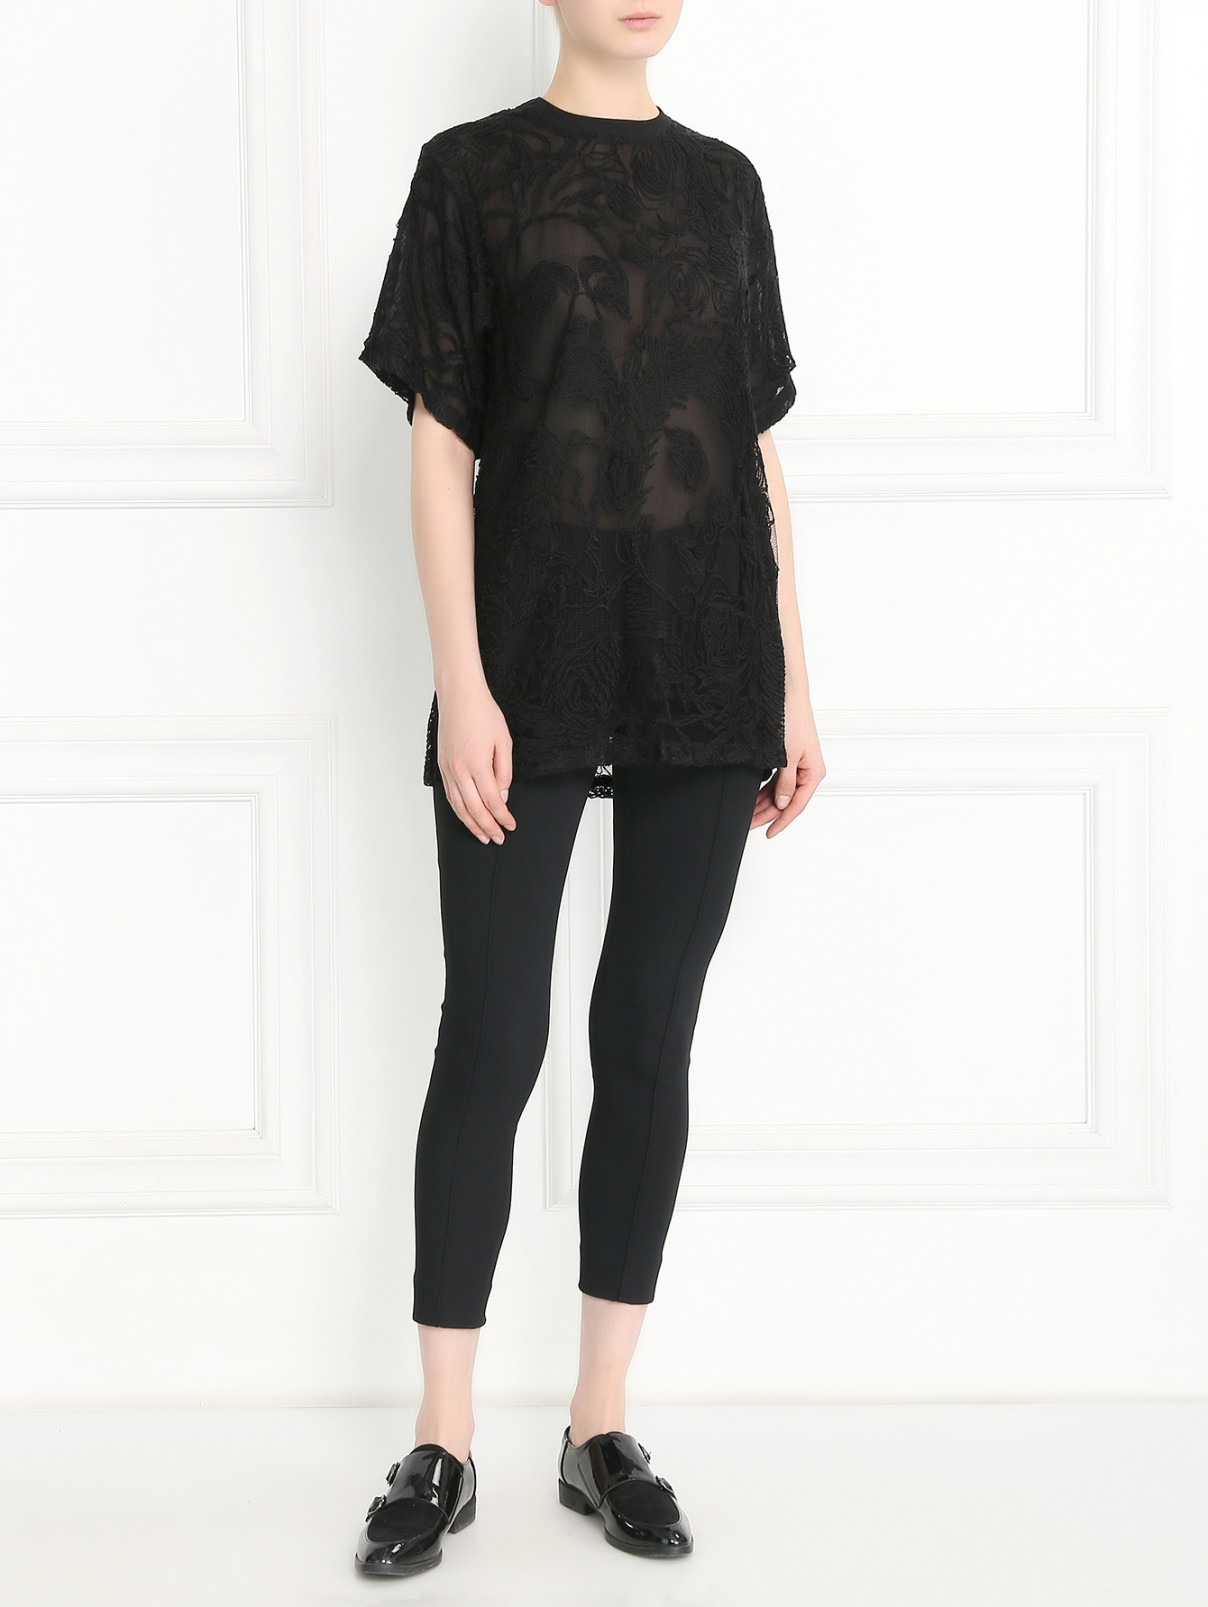 Блуза из сетки и кружева Jean Paul Gaultier  –  Модель Общий вид  – Цвет:  Черный